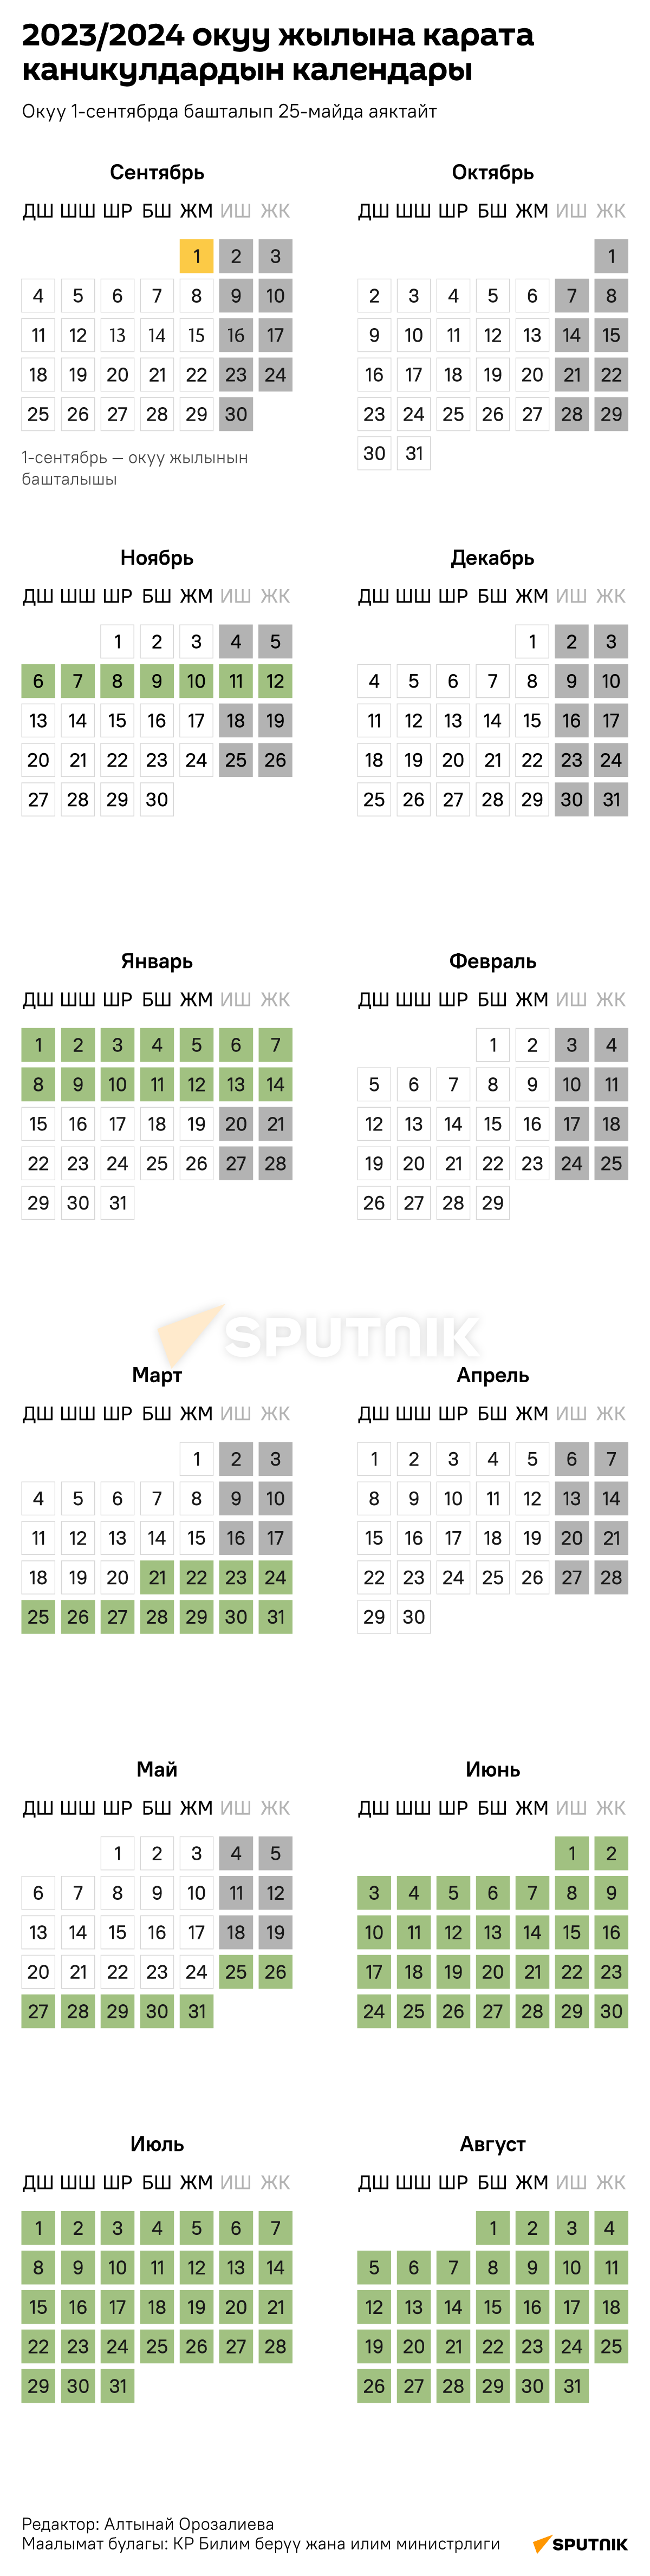 2023/2024 окуу жылына карата каникулдардын календары - Sputnik Кыргызстан